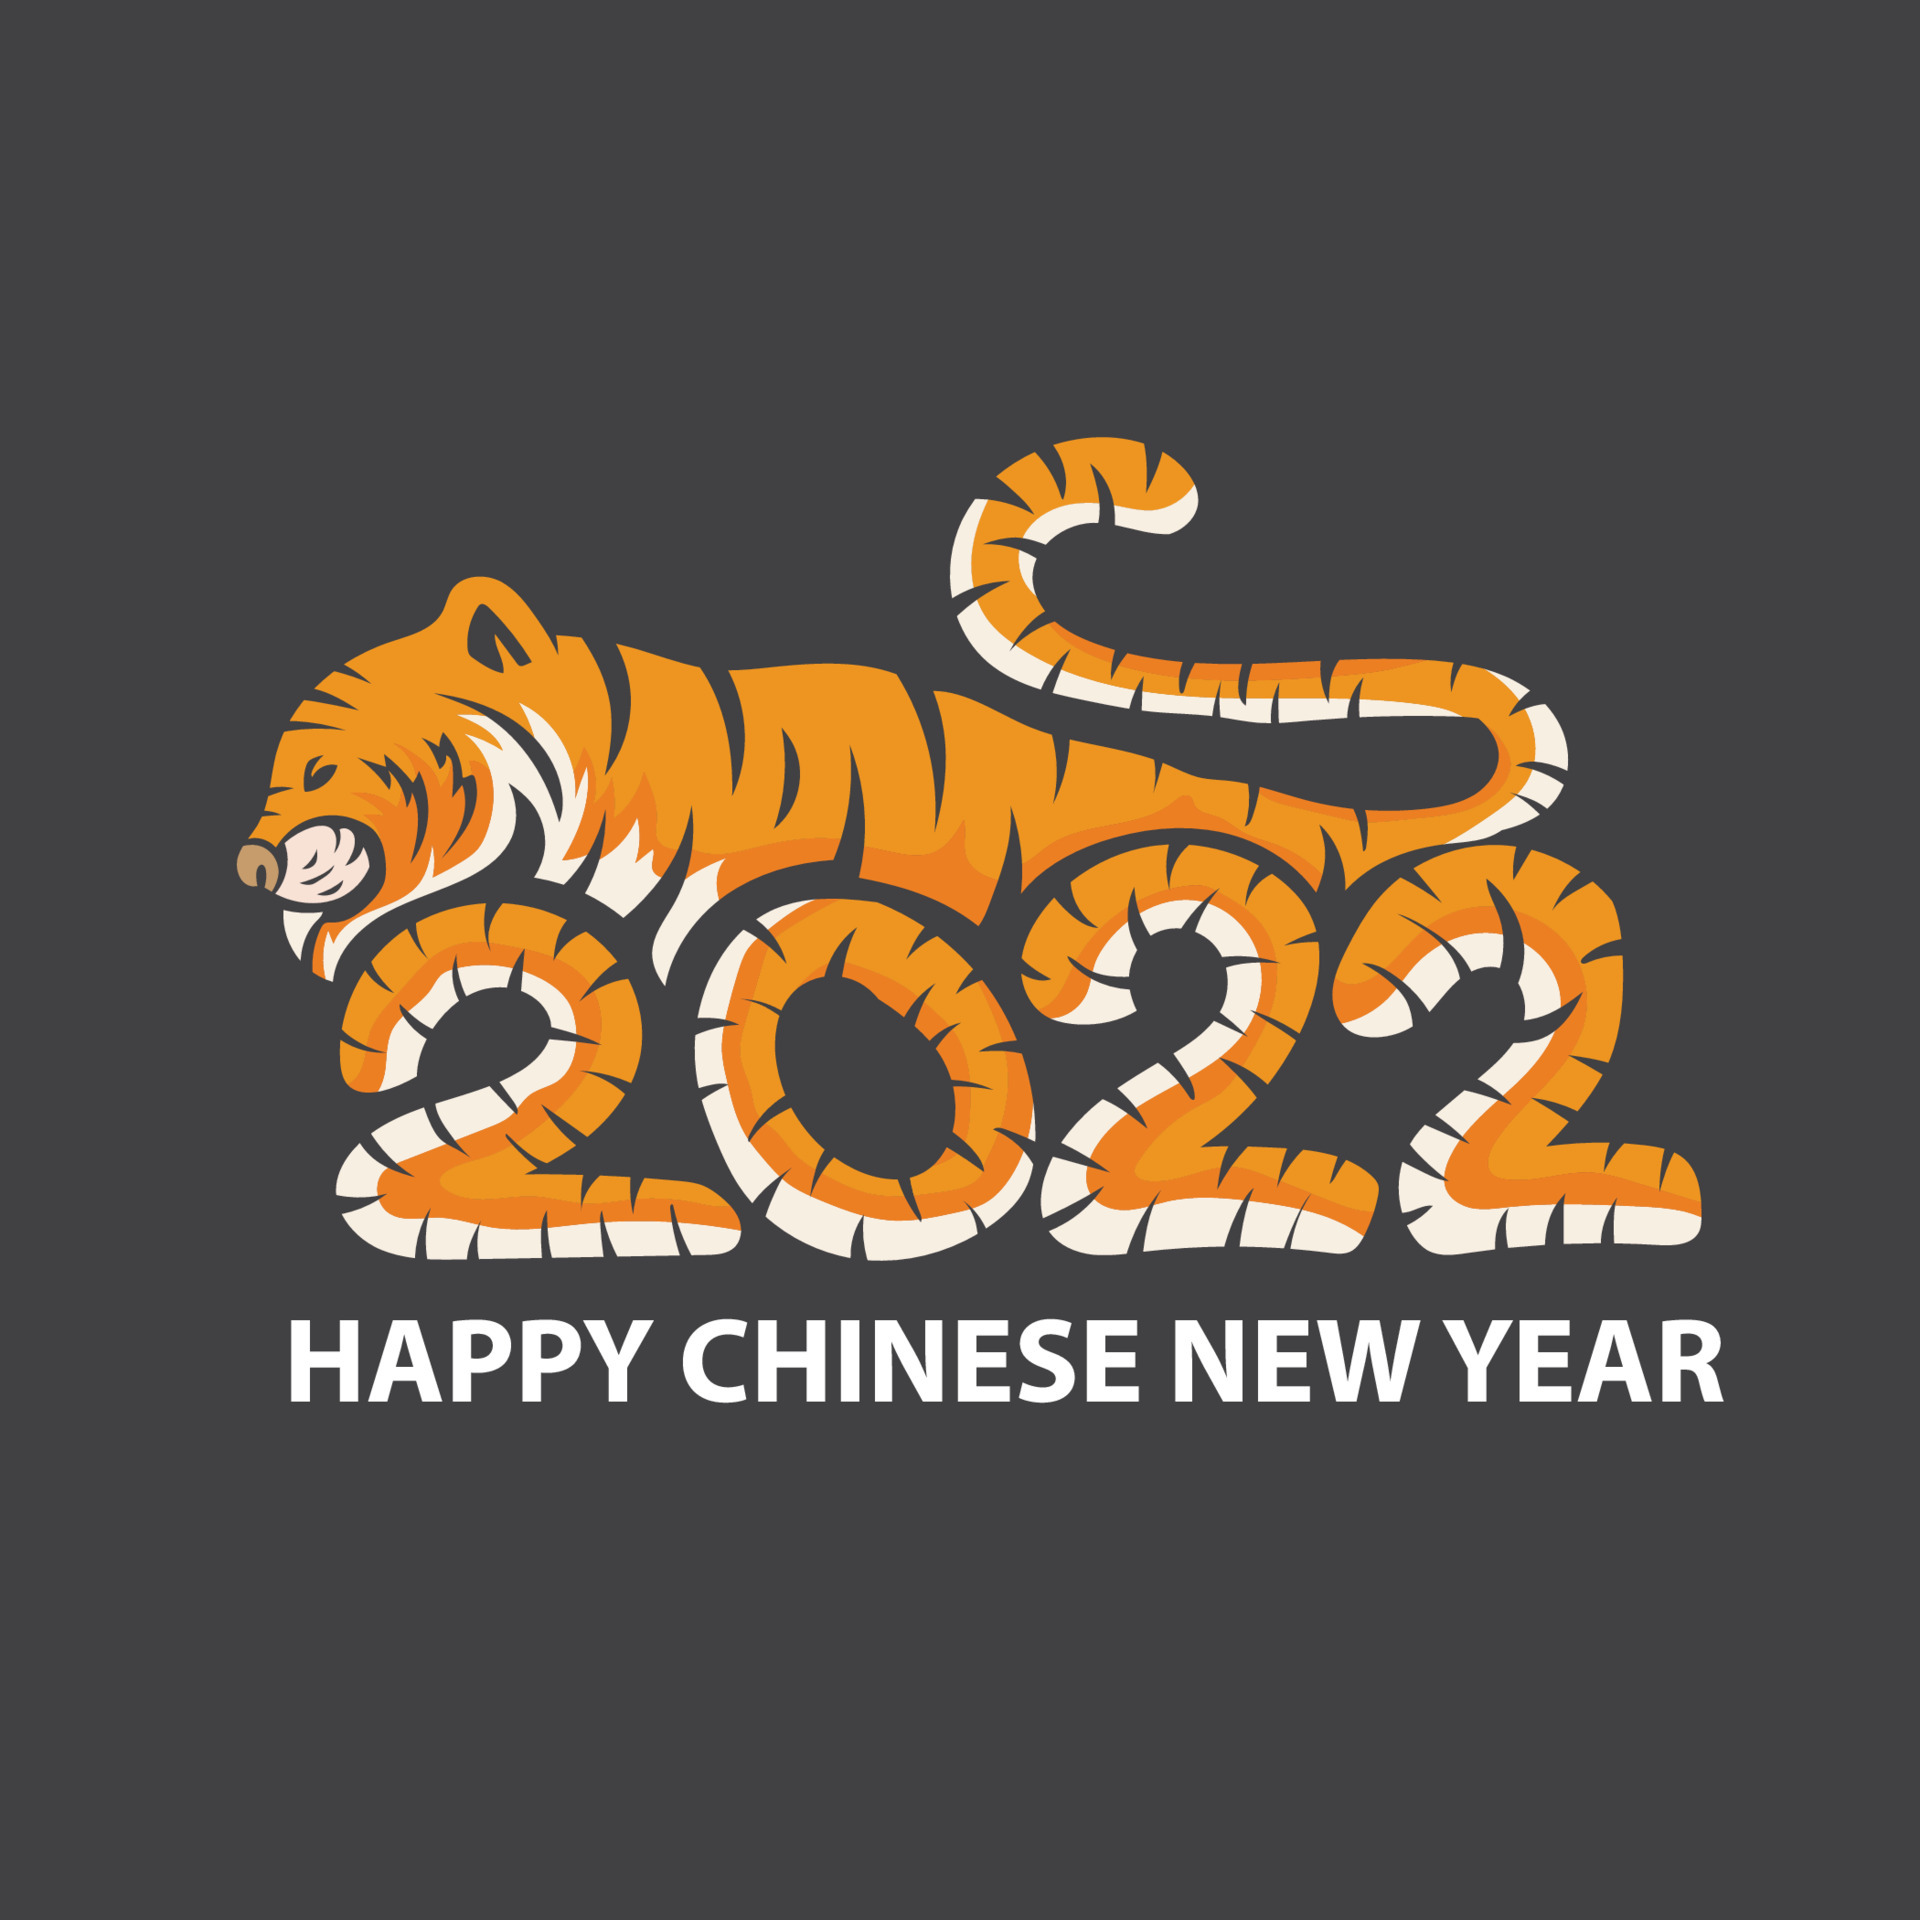 2022虎年快樂貼圖 免費下載 | 天天瘋後製